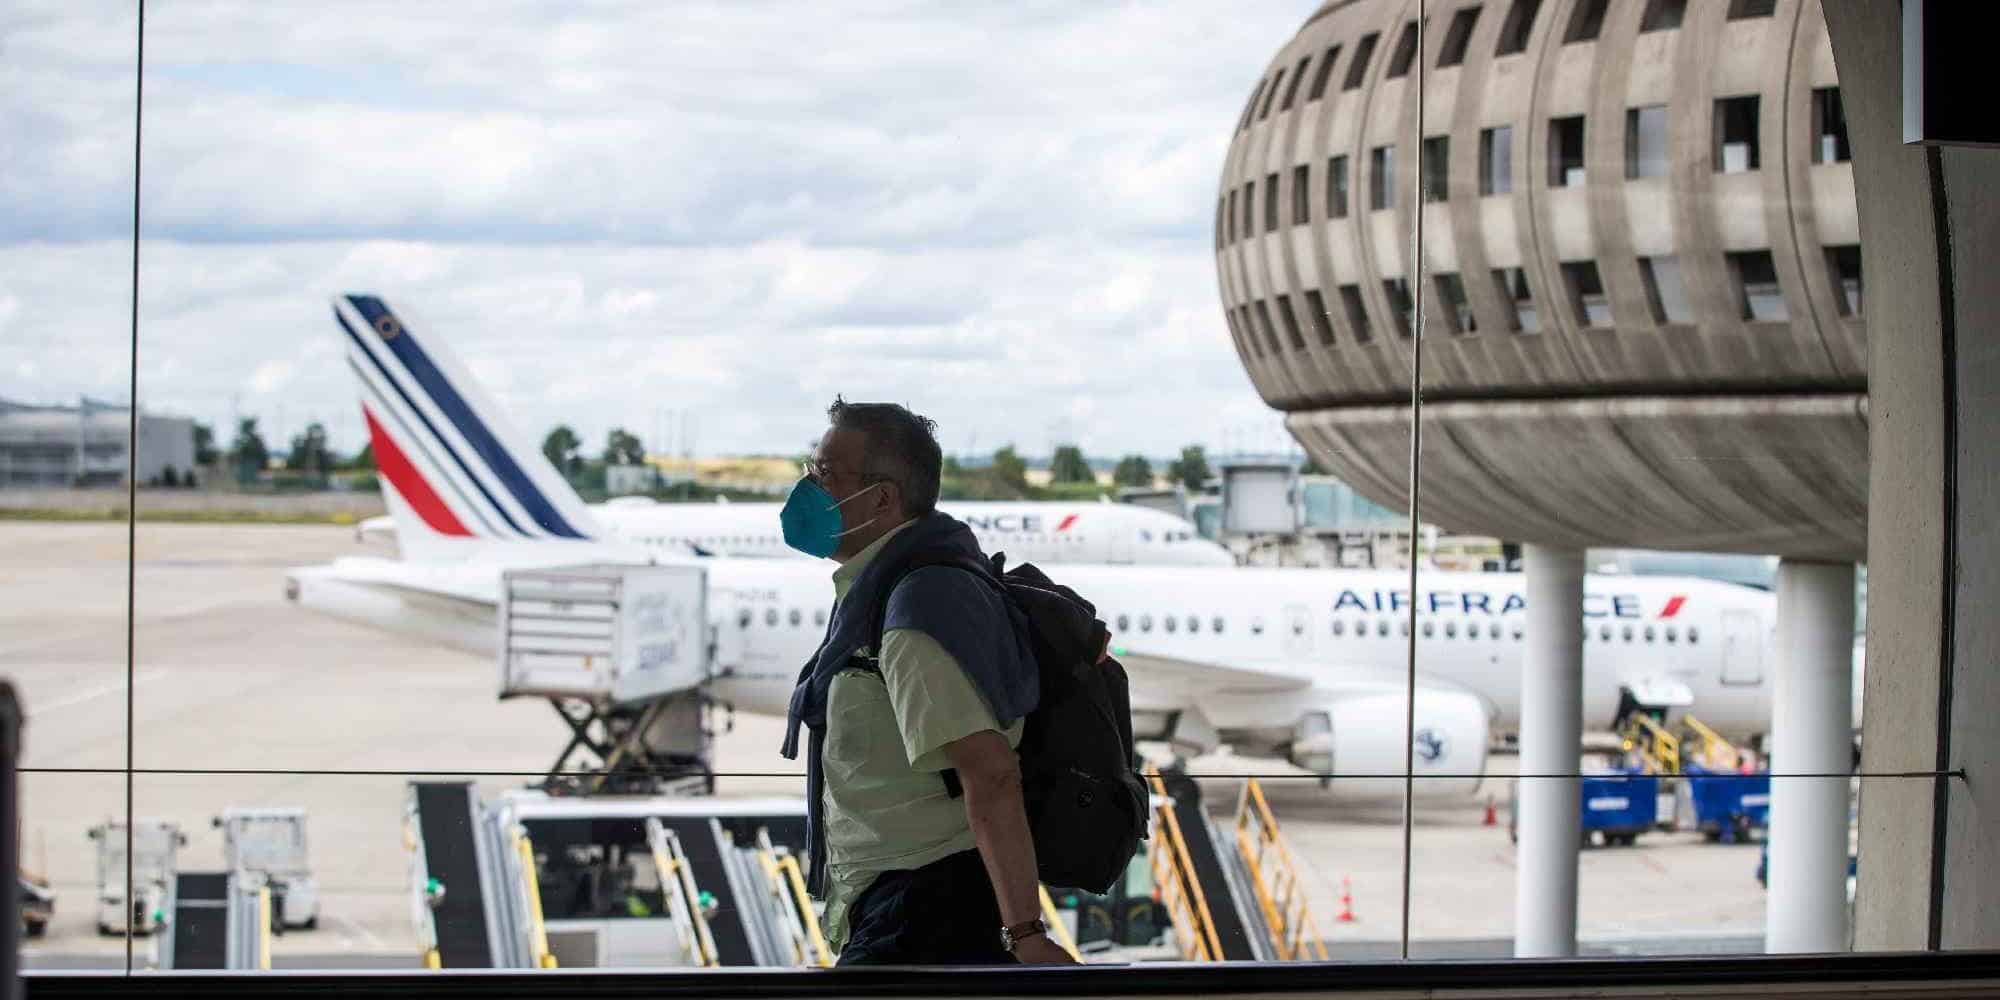 Επιβάτης περπατάει δίπλα σε διάδρομο καθώς τα αεροσκάφη της Air France στο αεροδρόμιο στο Παρίσι